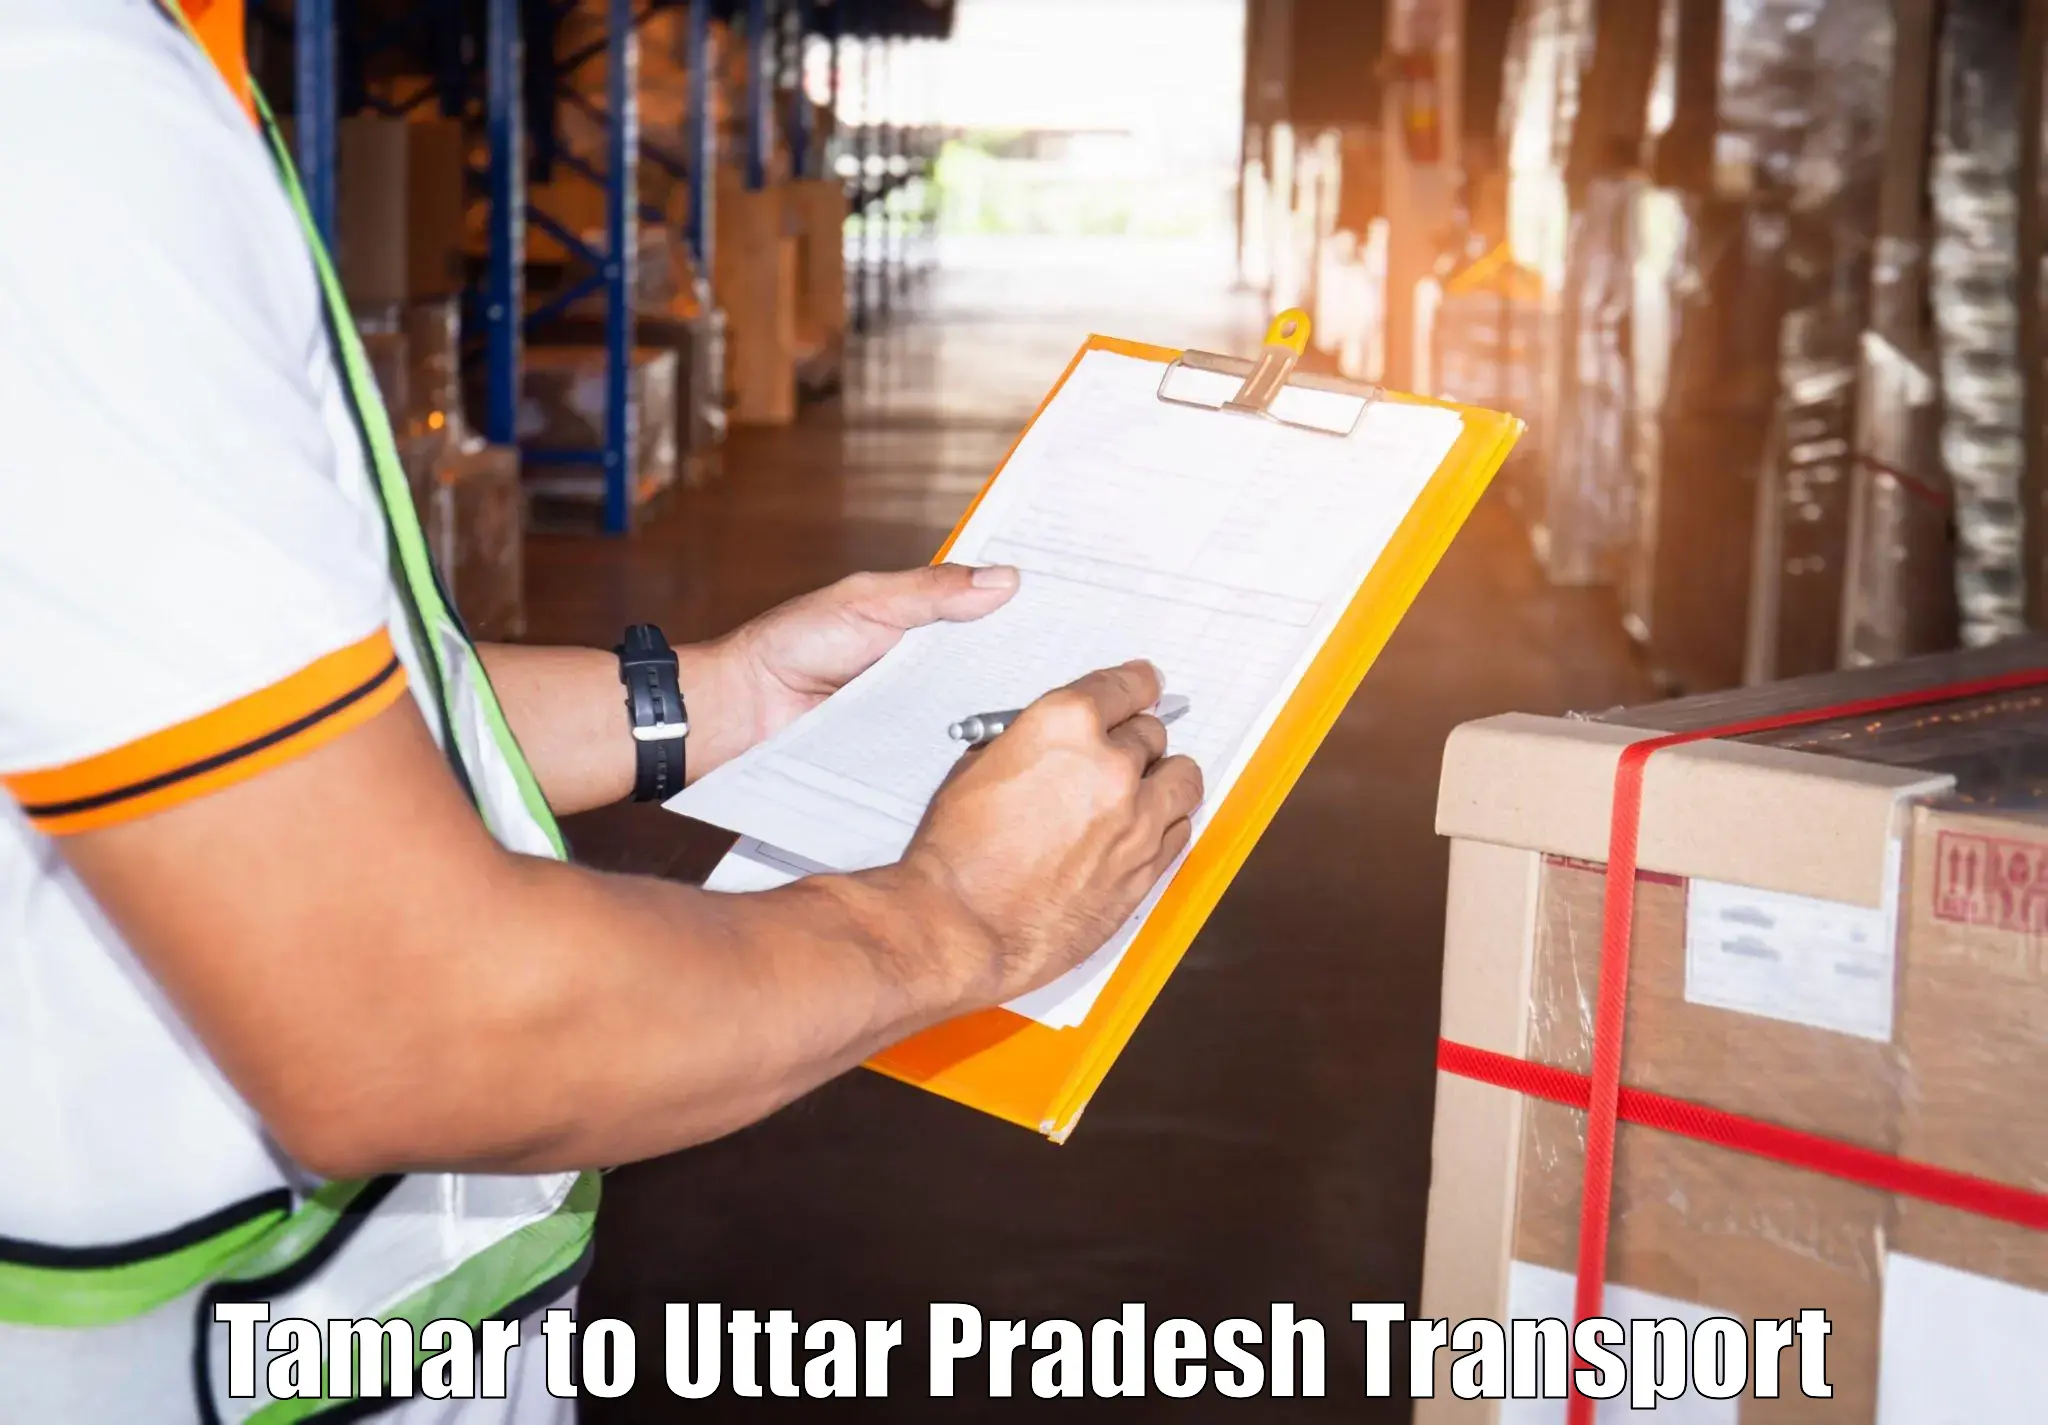 Material transport services Tamar to Sahatwar